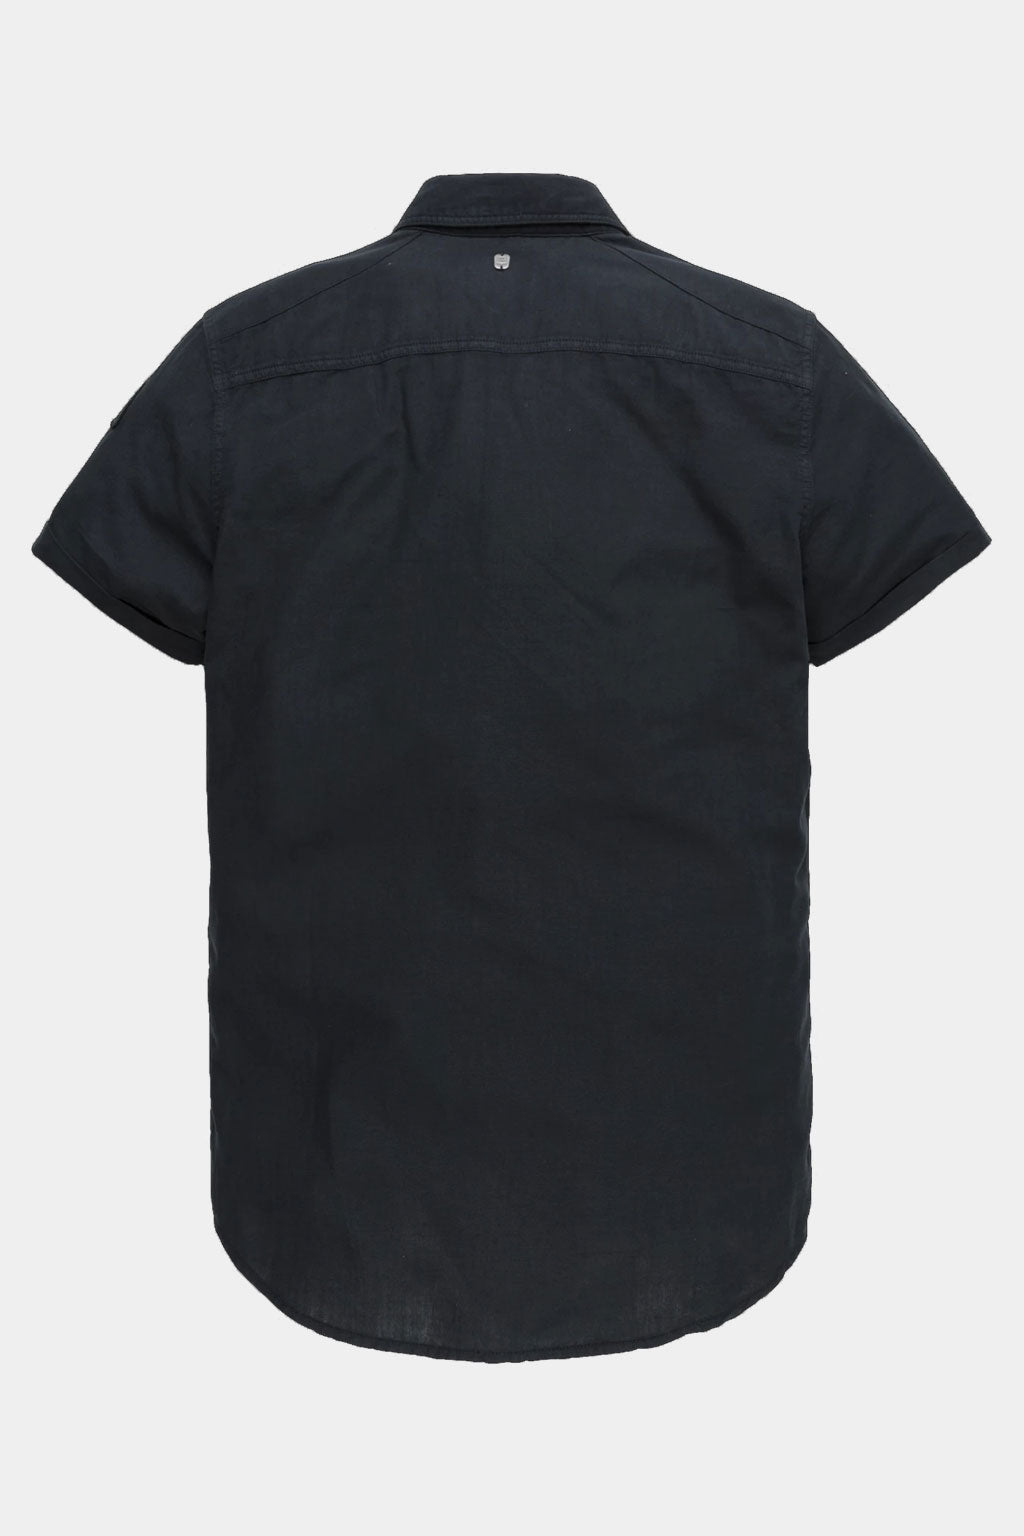 PME Legends - Cotton Linen Cargo Shirt